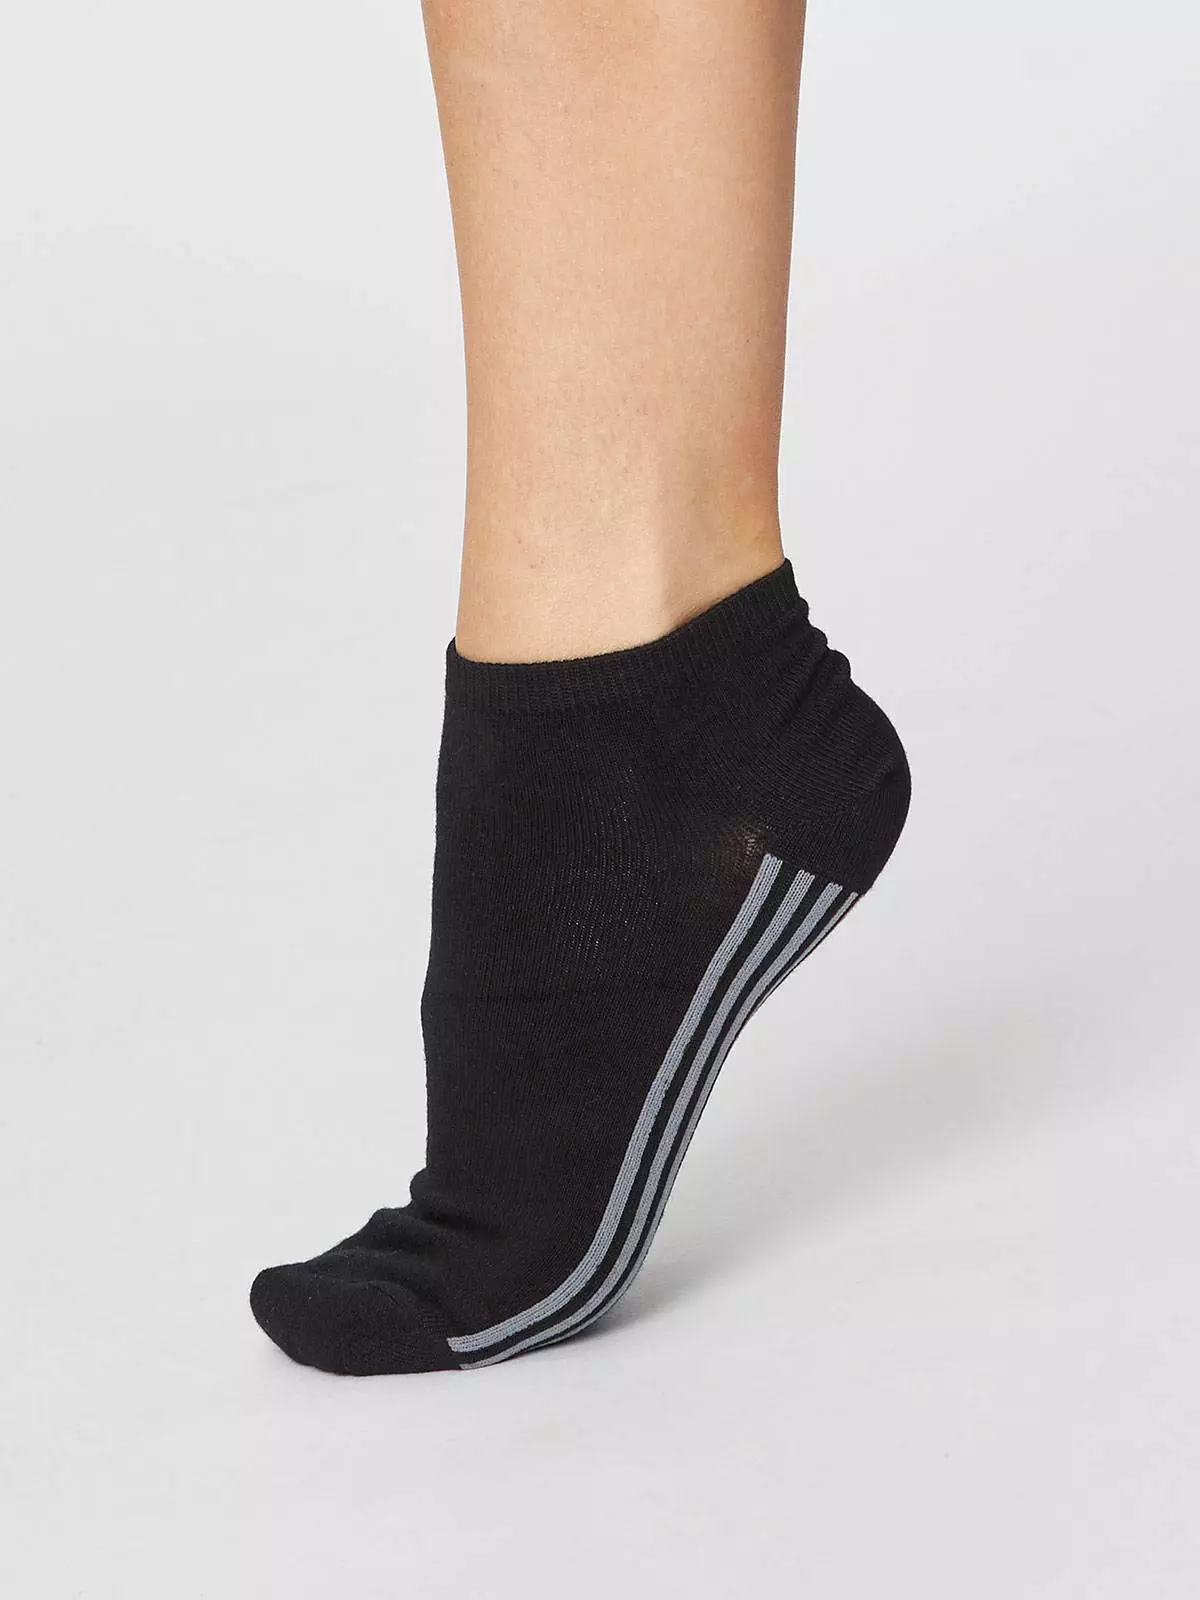 Sneaker-Socken Modell: Solid Jane